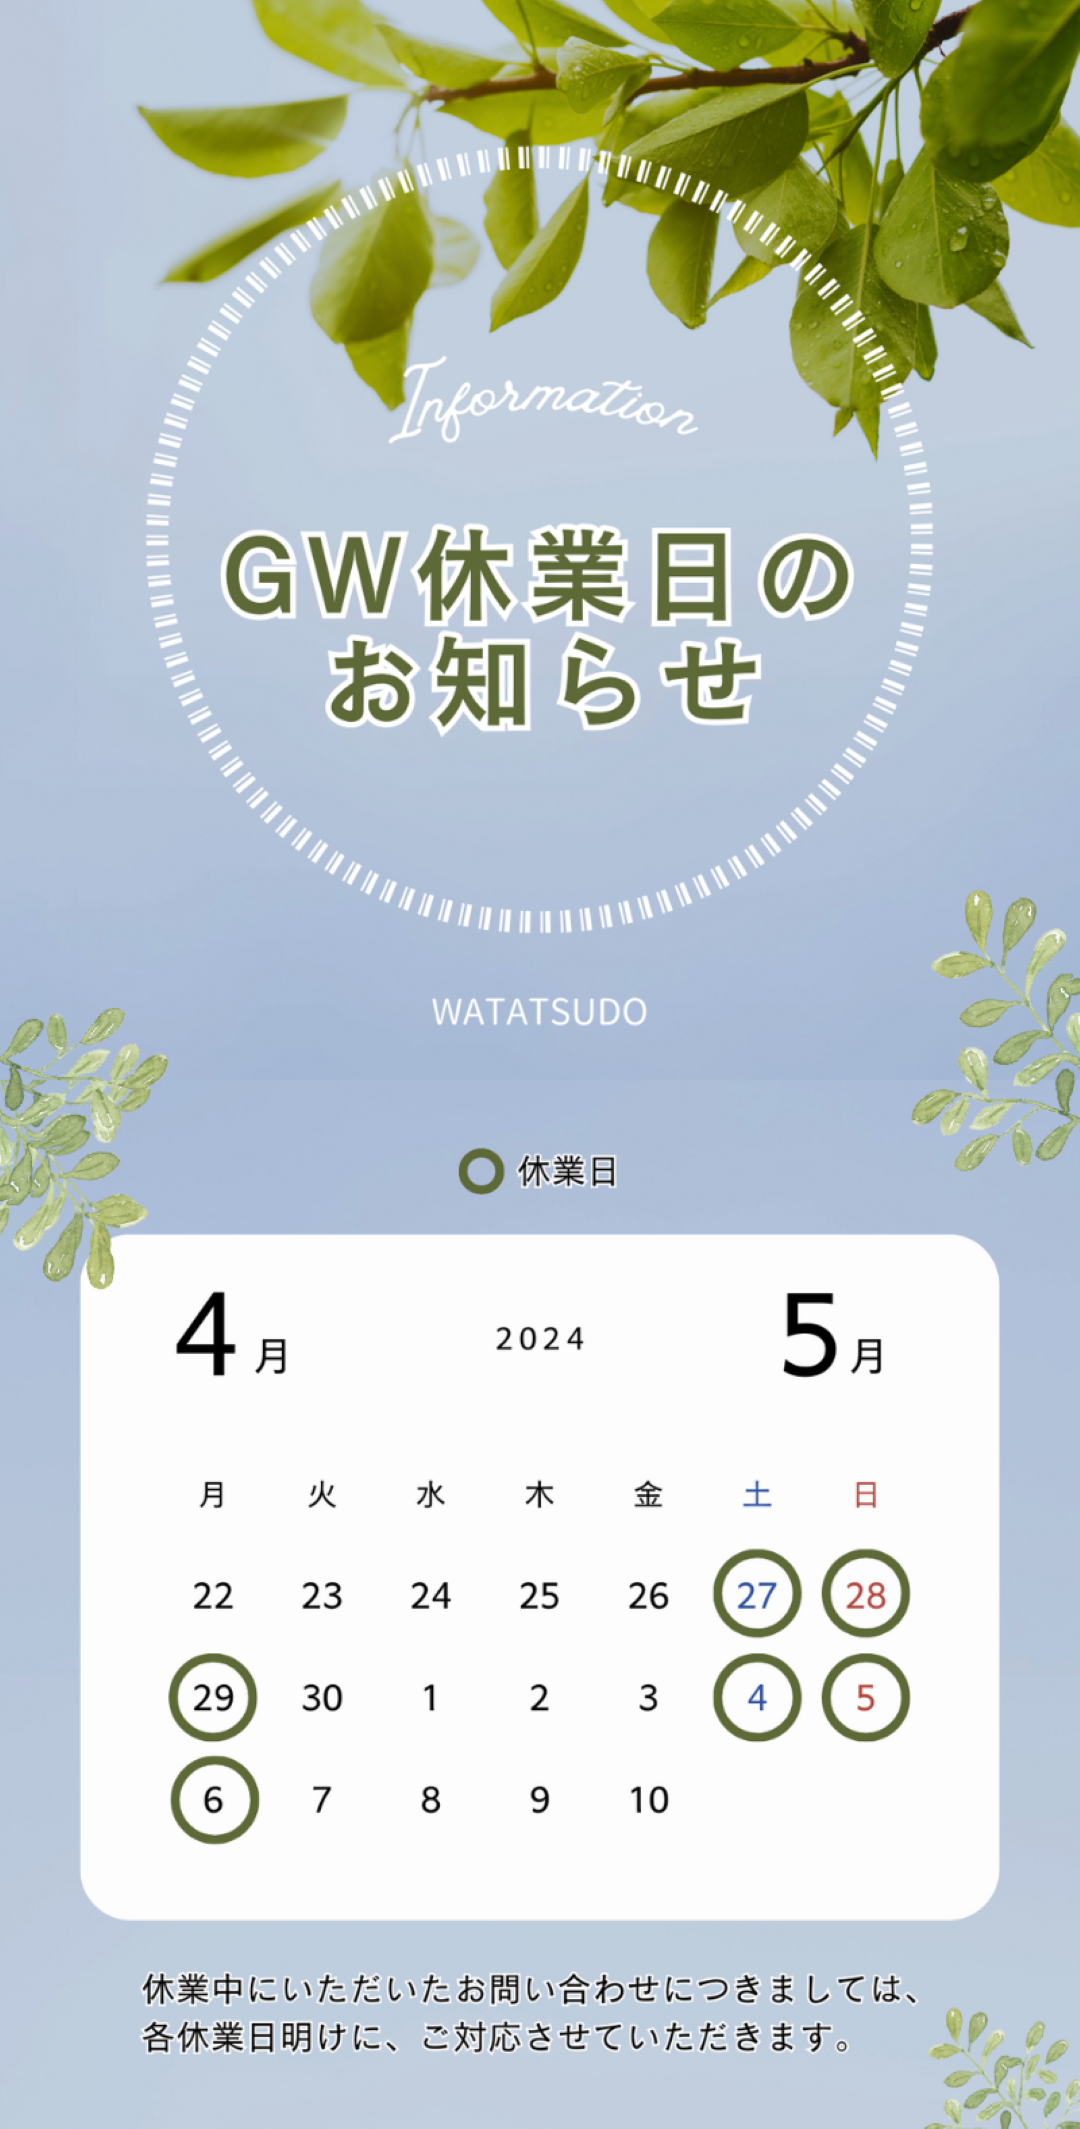 GW休業日のお知らせ | WATATSUDO